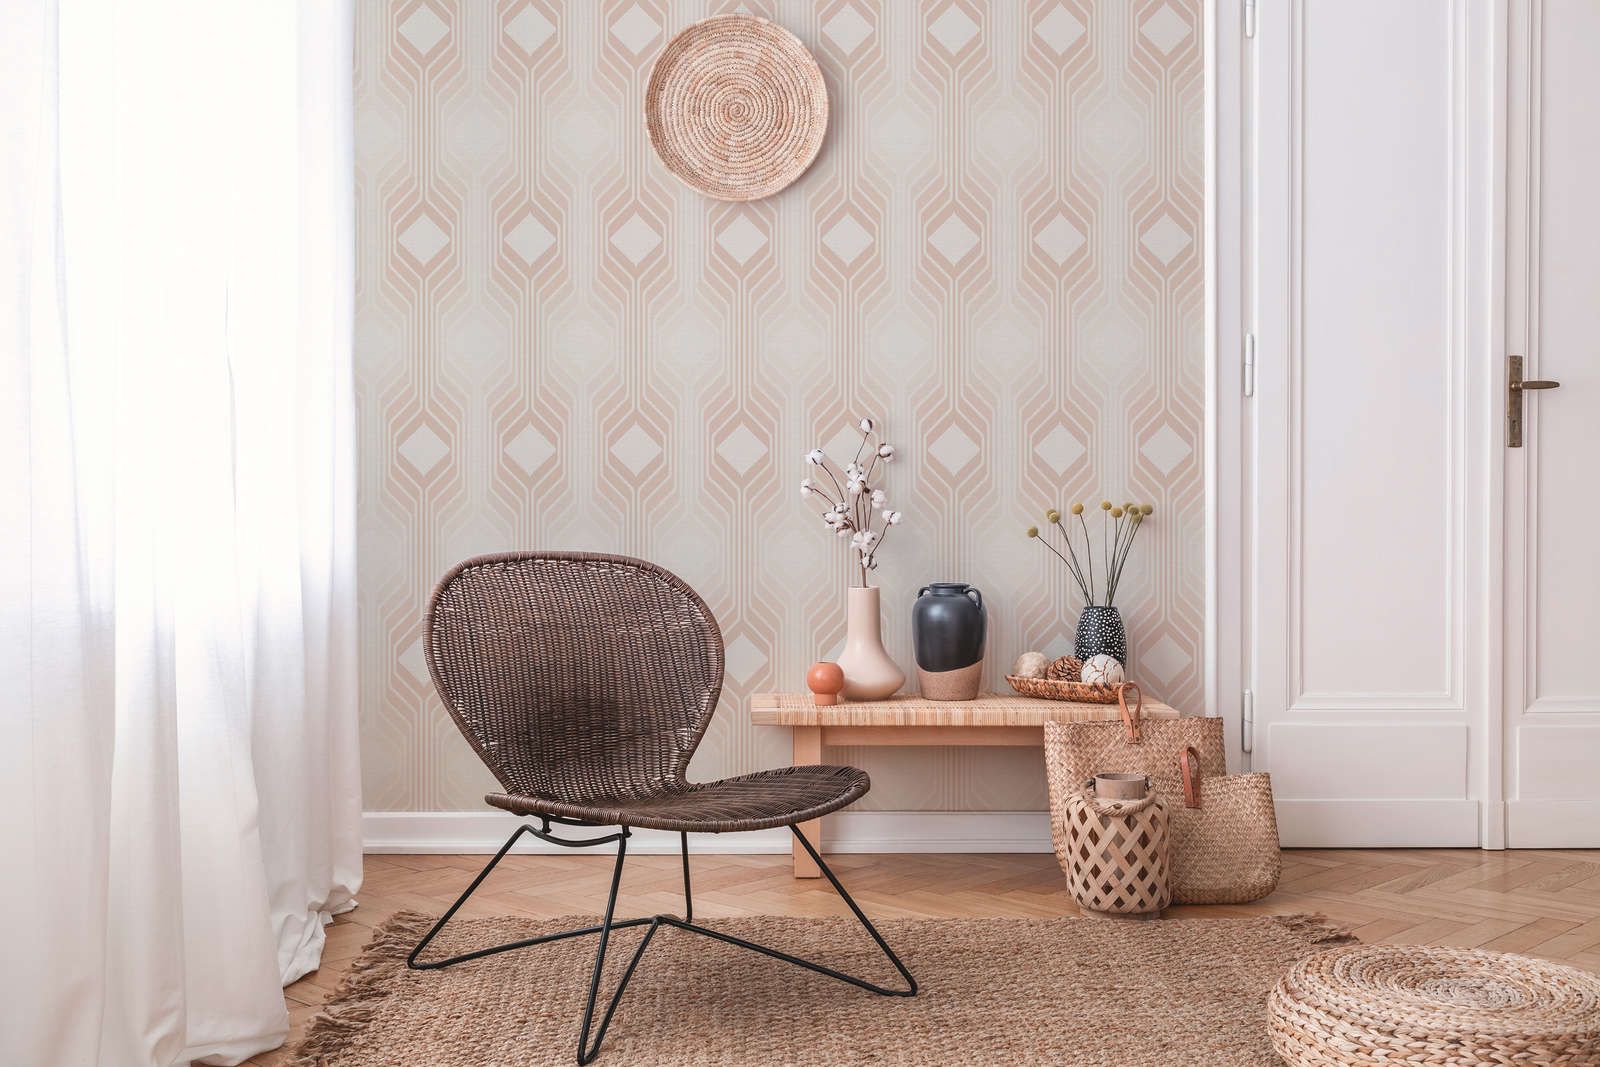             Retro wallpaper with diamond pattern in soft colours - beige, cream, white
        